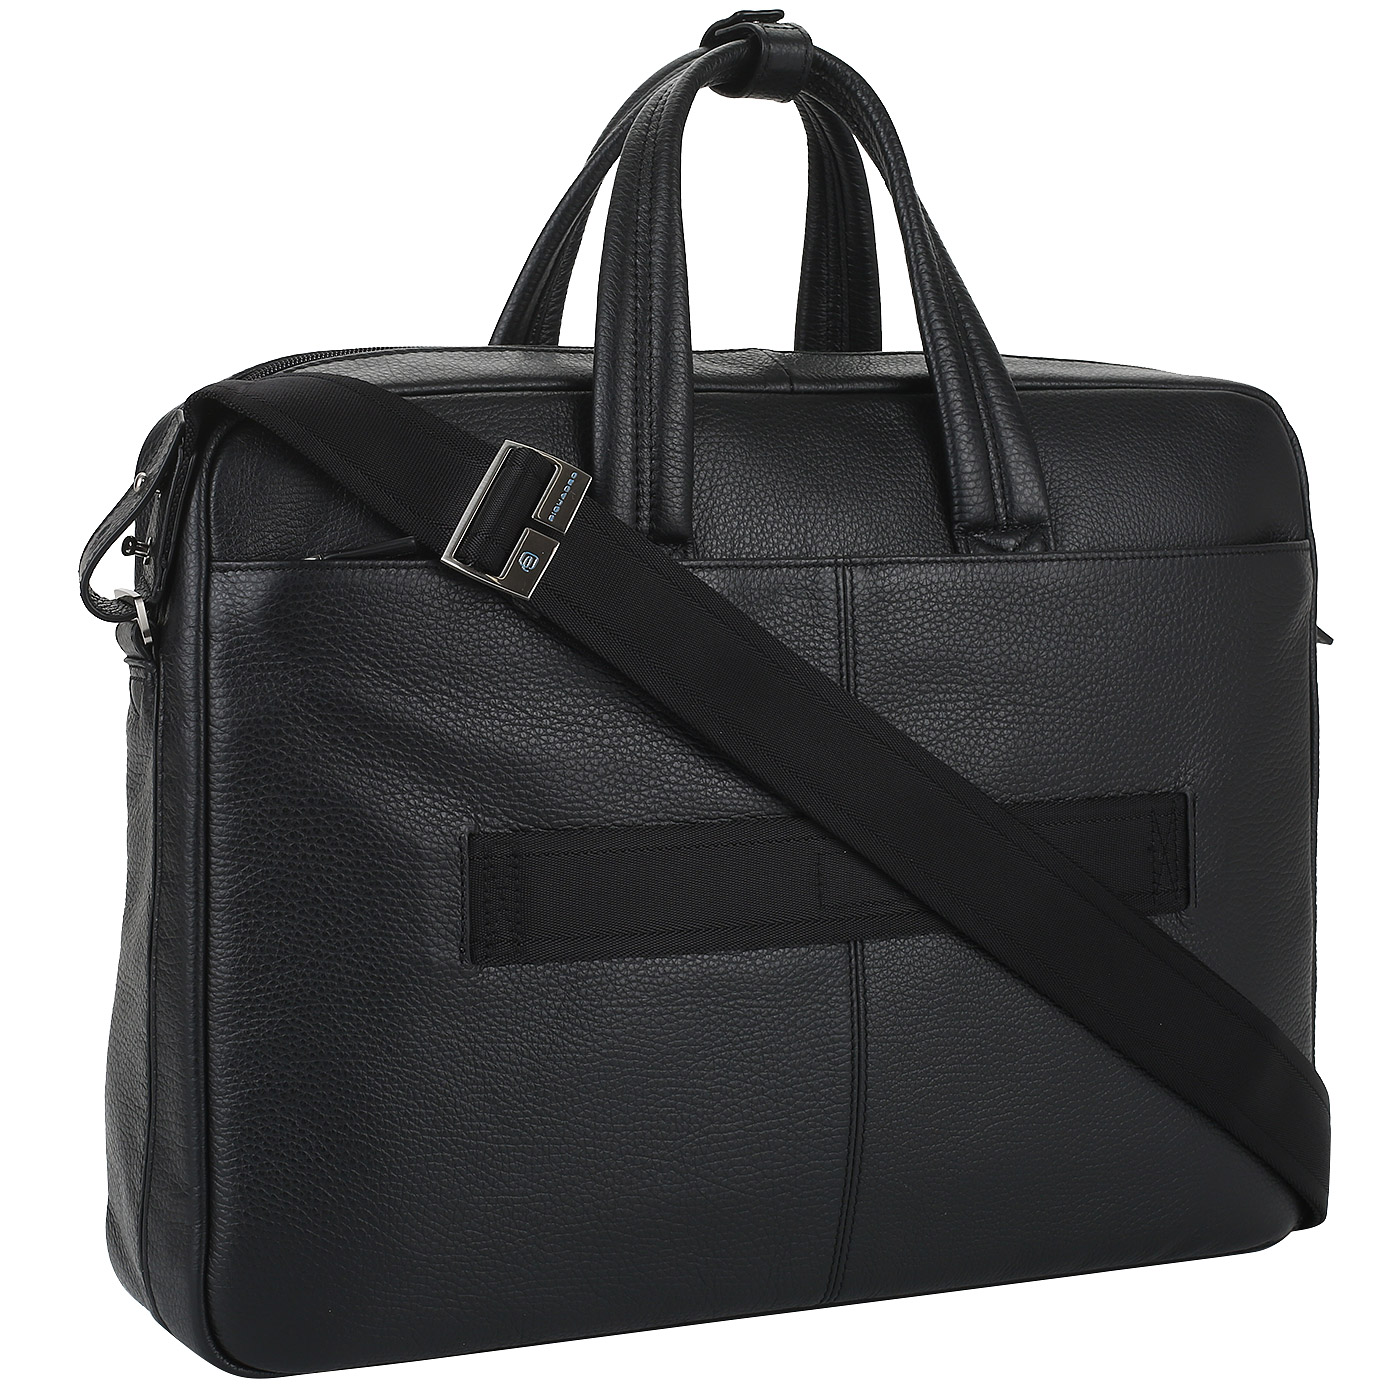 Кожаная сумка делового стиля Piquadro Vibe